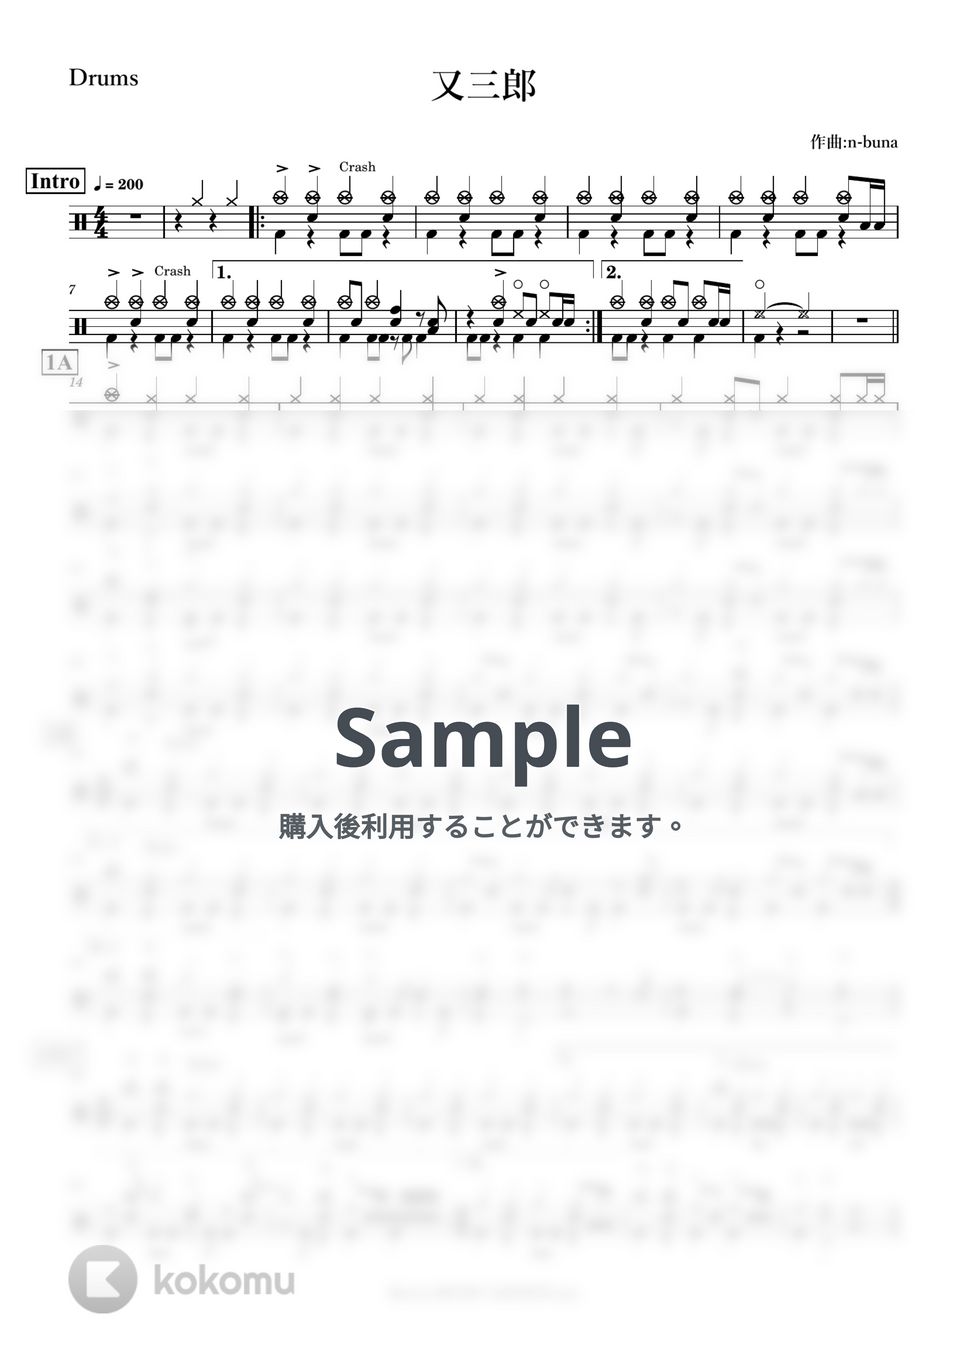 ヨルシカ - 又三郎【ドラム】 by Kornz MUSIC LESSON.net